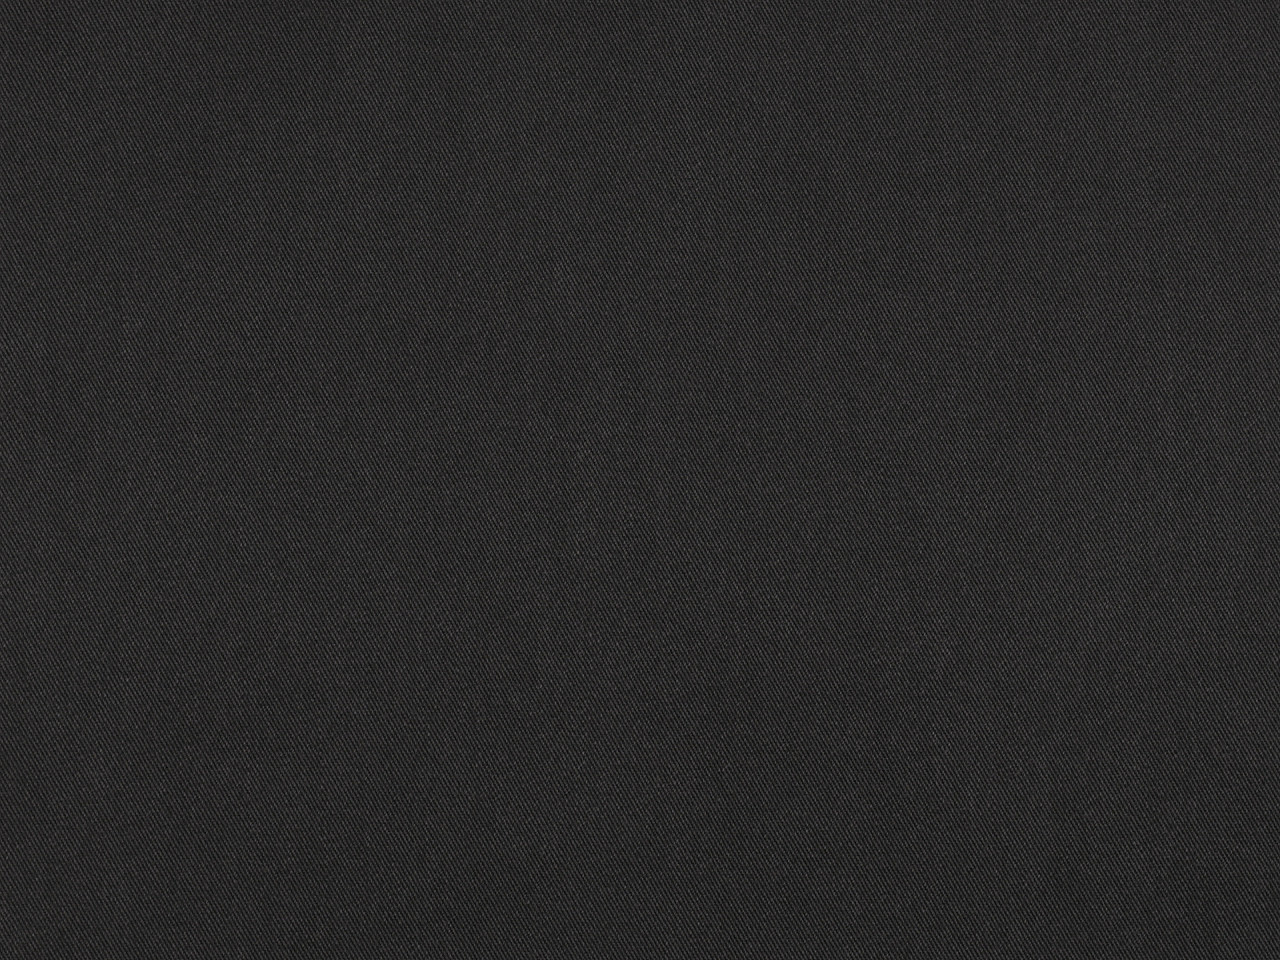 Šatovka, imitace rifloviny Varianta: 3 (7) černý inkoust, Balení: 1 m